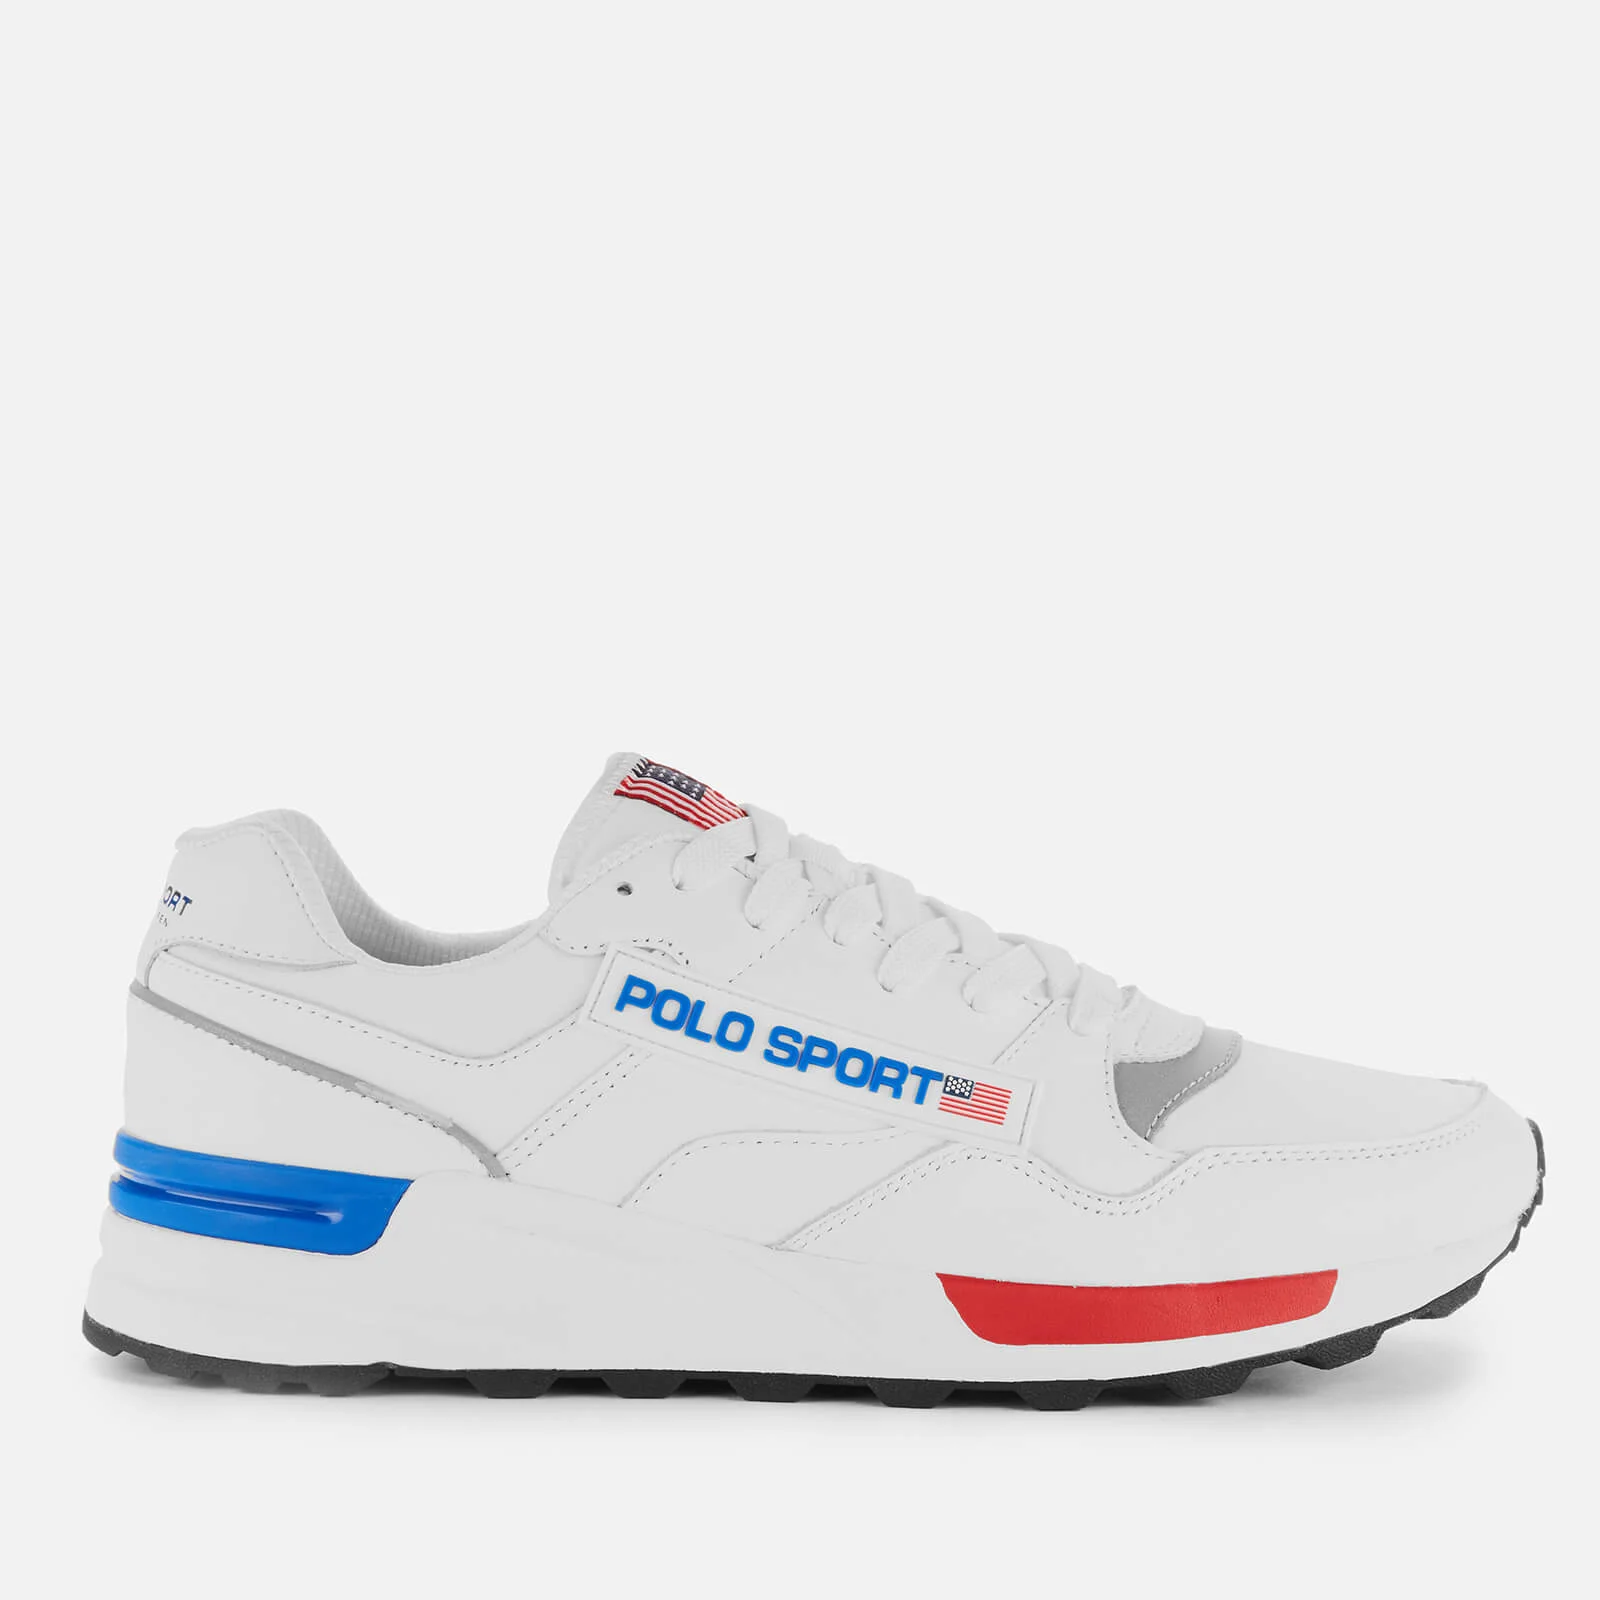 Polo Sport Ralph Lauren Men's Trackstar 100 Runner Style Trainers - White Image 1